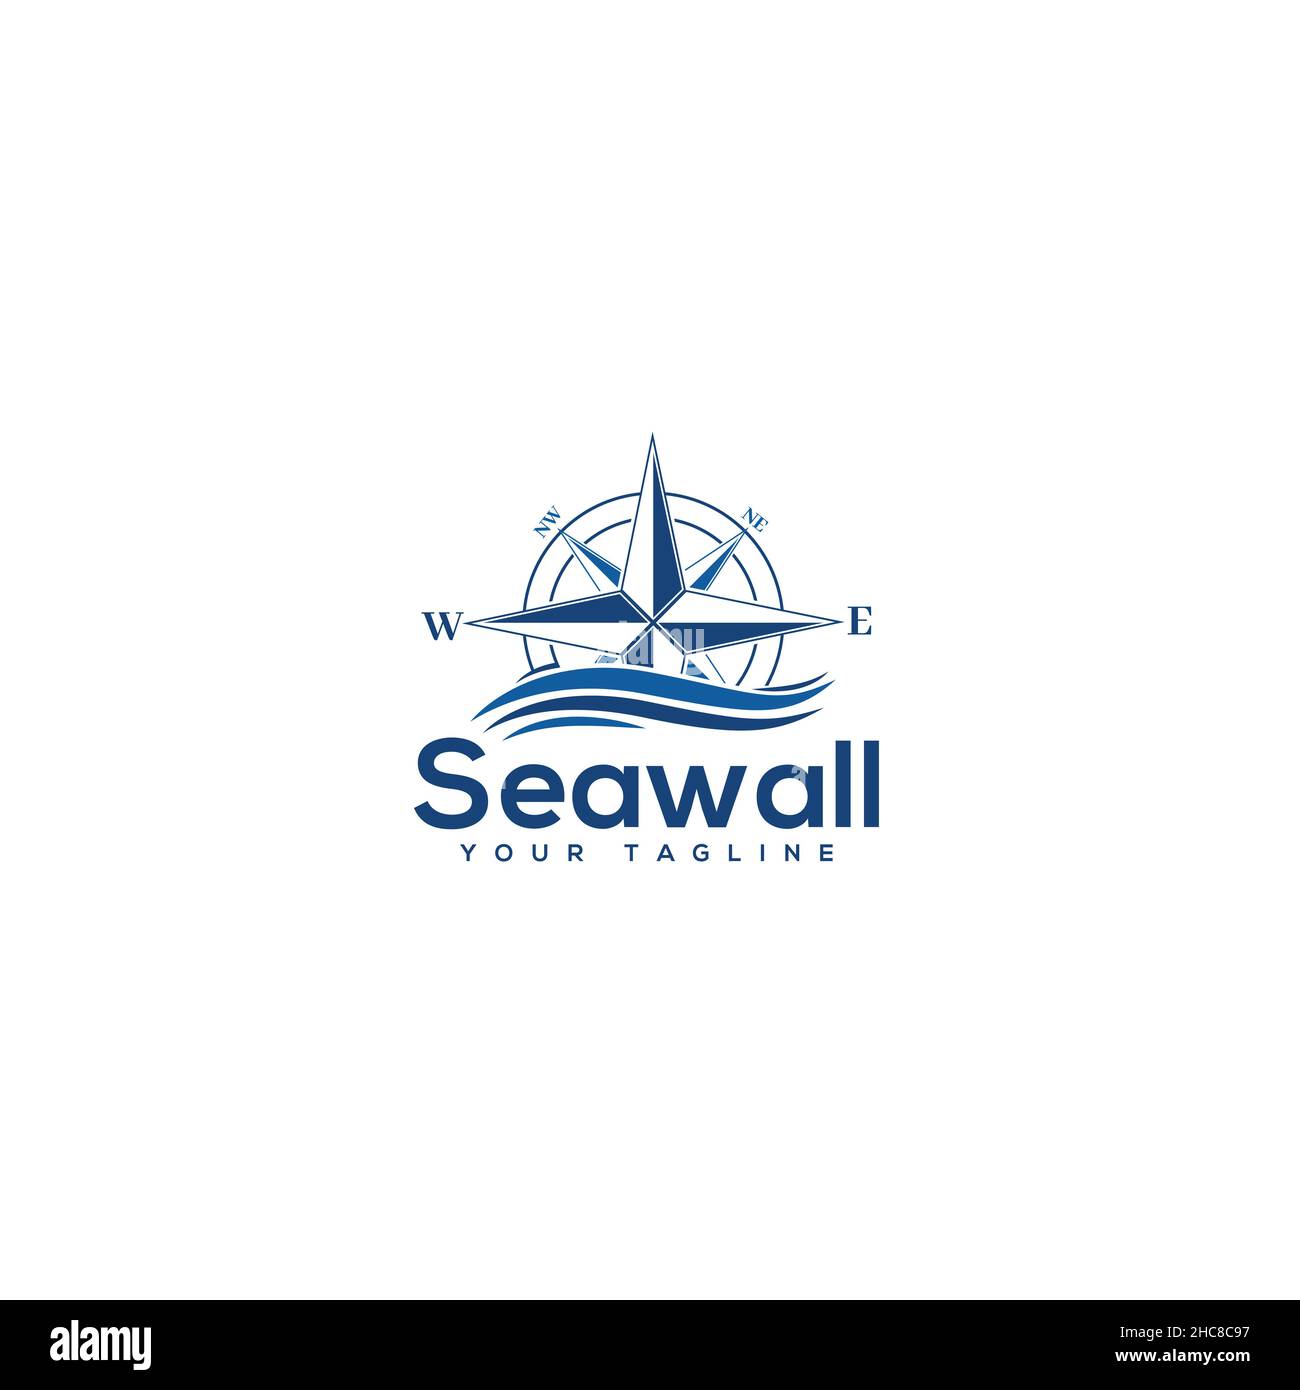 Design moderne avec logo compas Seawall direct Illustration de Vecteur